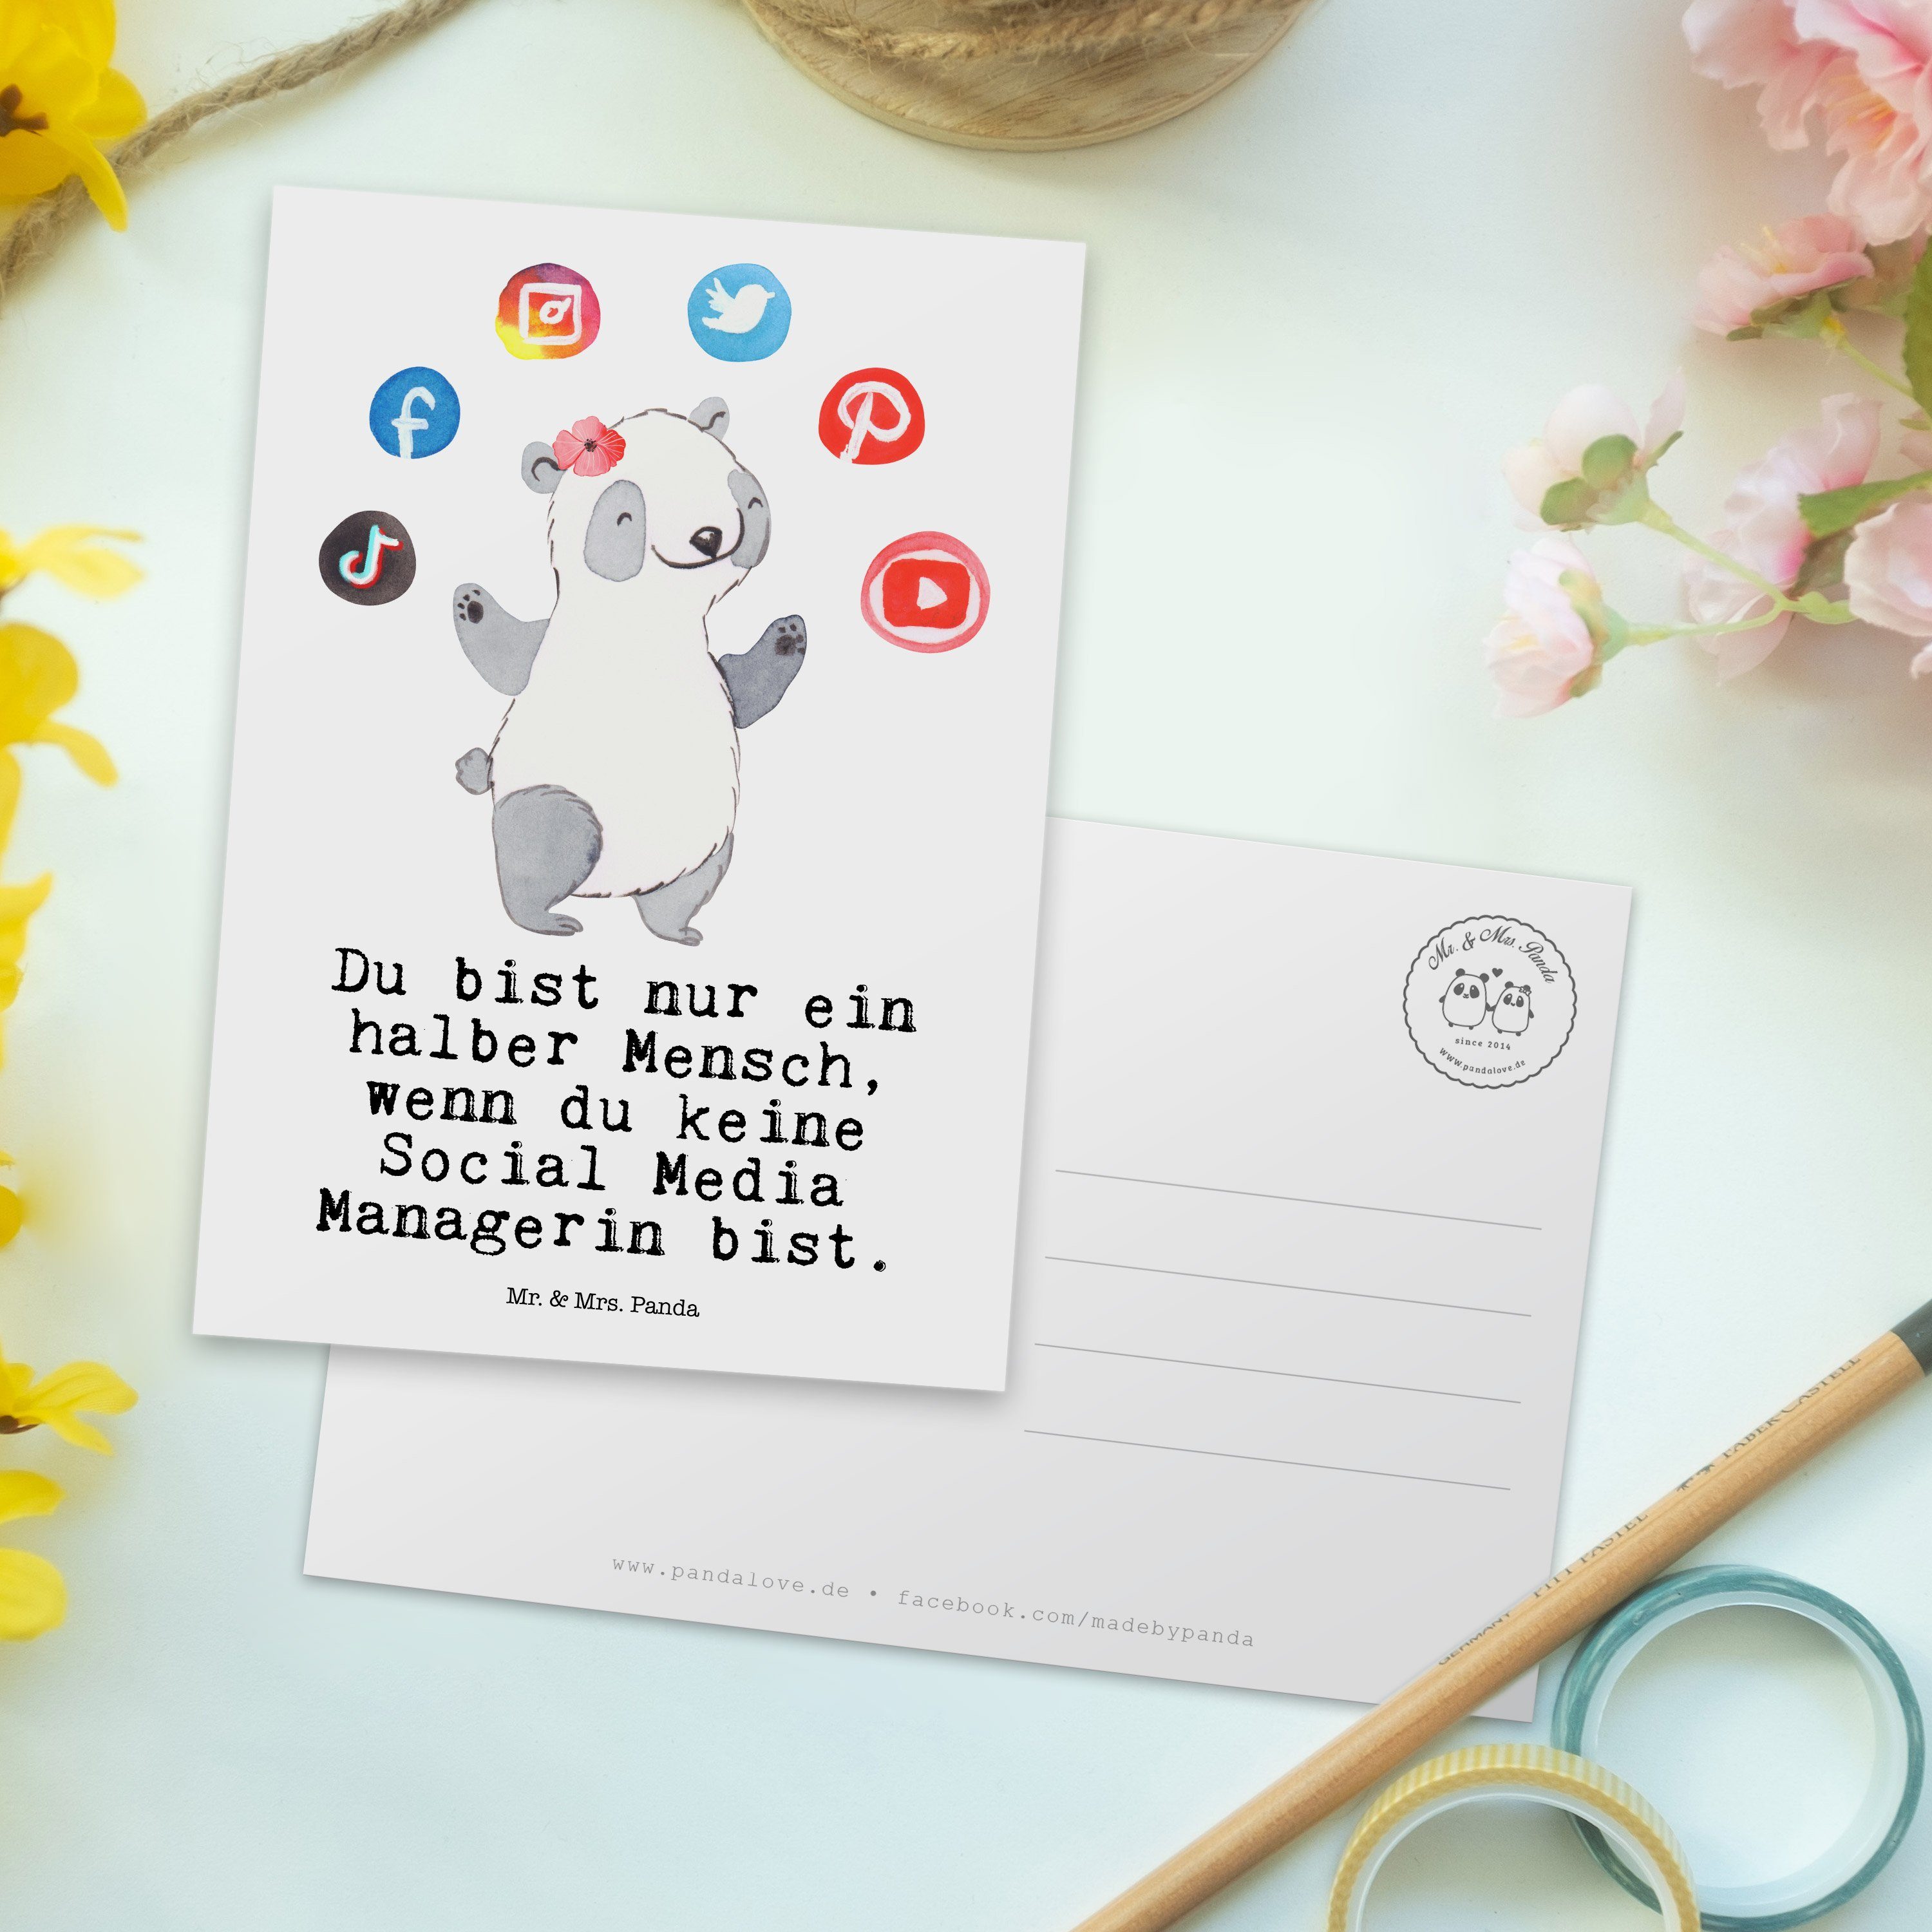 Mr. & Mrs. Panda Postkarte - Weiß mit Ansichtskar Managerin Herz Karte, - Media Geschenk, Social